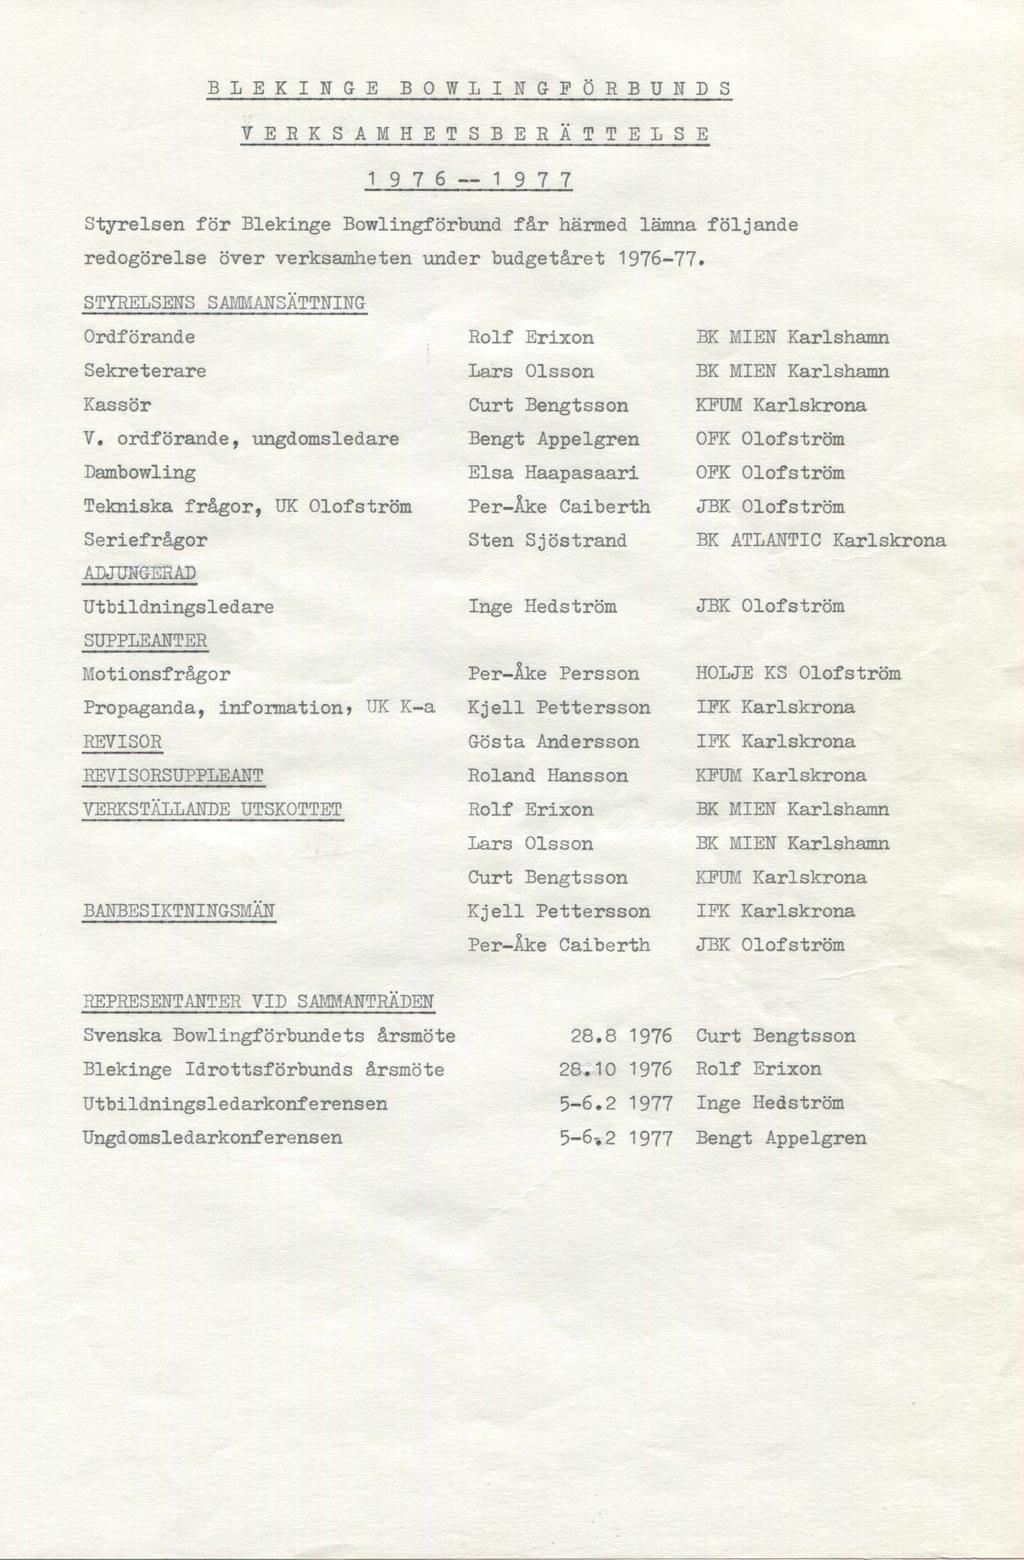 BLEKINGE BOWLINGFÖRBUNDS VERKSAMHETSBERÄTTELSE 1976 1977 Styrelsen för Blekinge Bowlingförbund får härmed lämna följande redogörelse över verksamheten under budgetåret 1976-77.